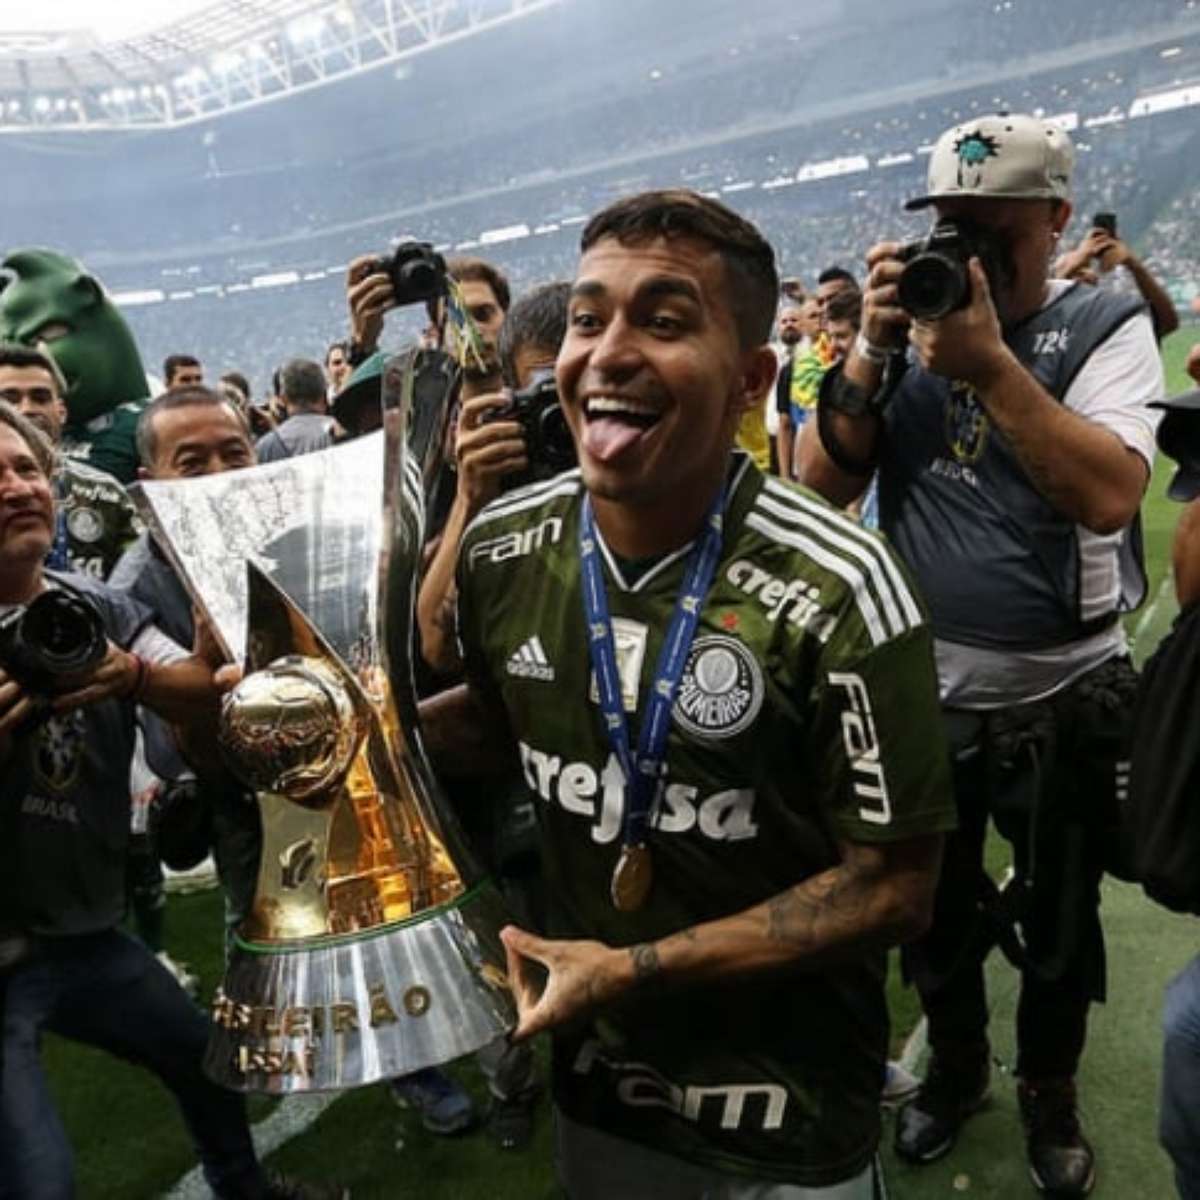 Palmeiras recebe o América-MG no jogo de entrega da taça